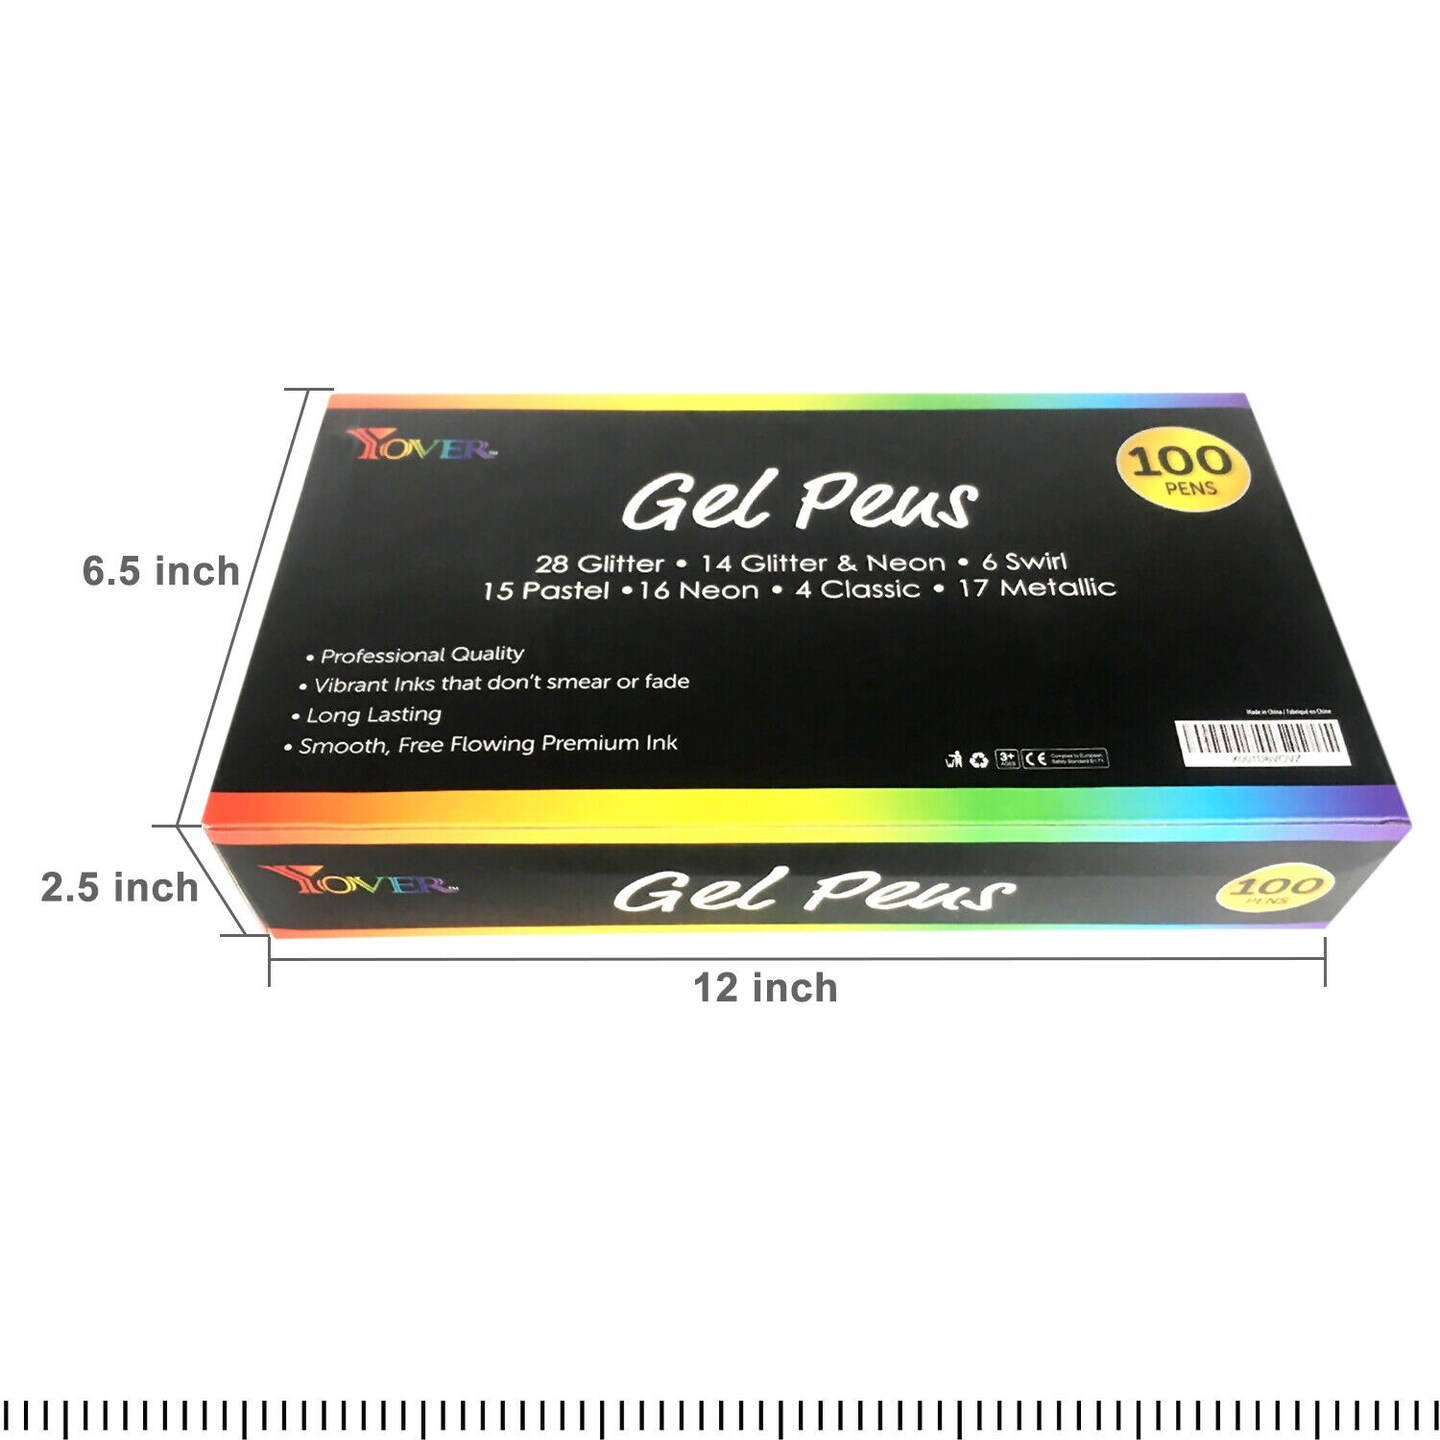 100-Piece High-Quality Gel Pens Set